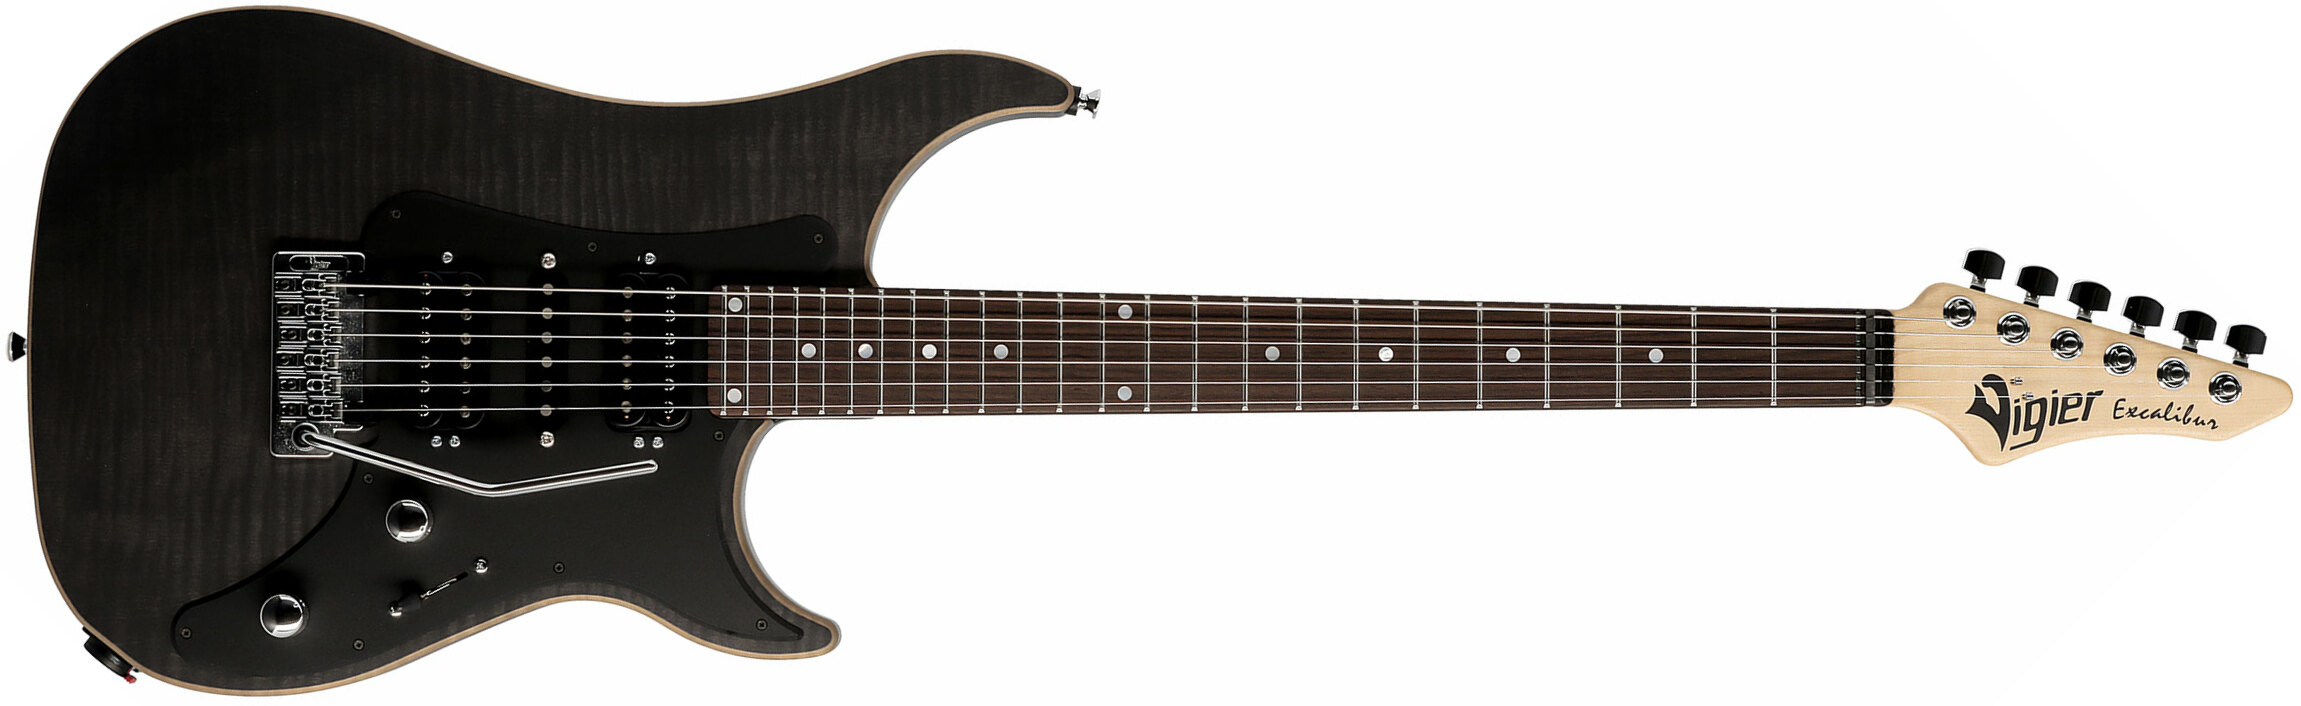 Vigier Excalibur Special Hsh Trem Rw - Black Diamond Matte - Str shape electric guitar - Main picture